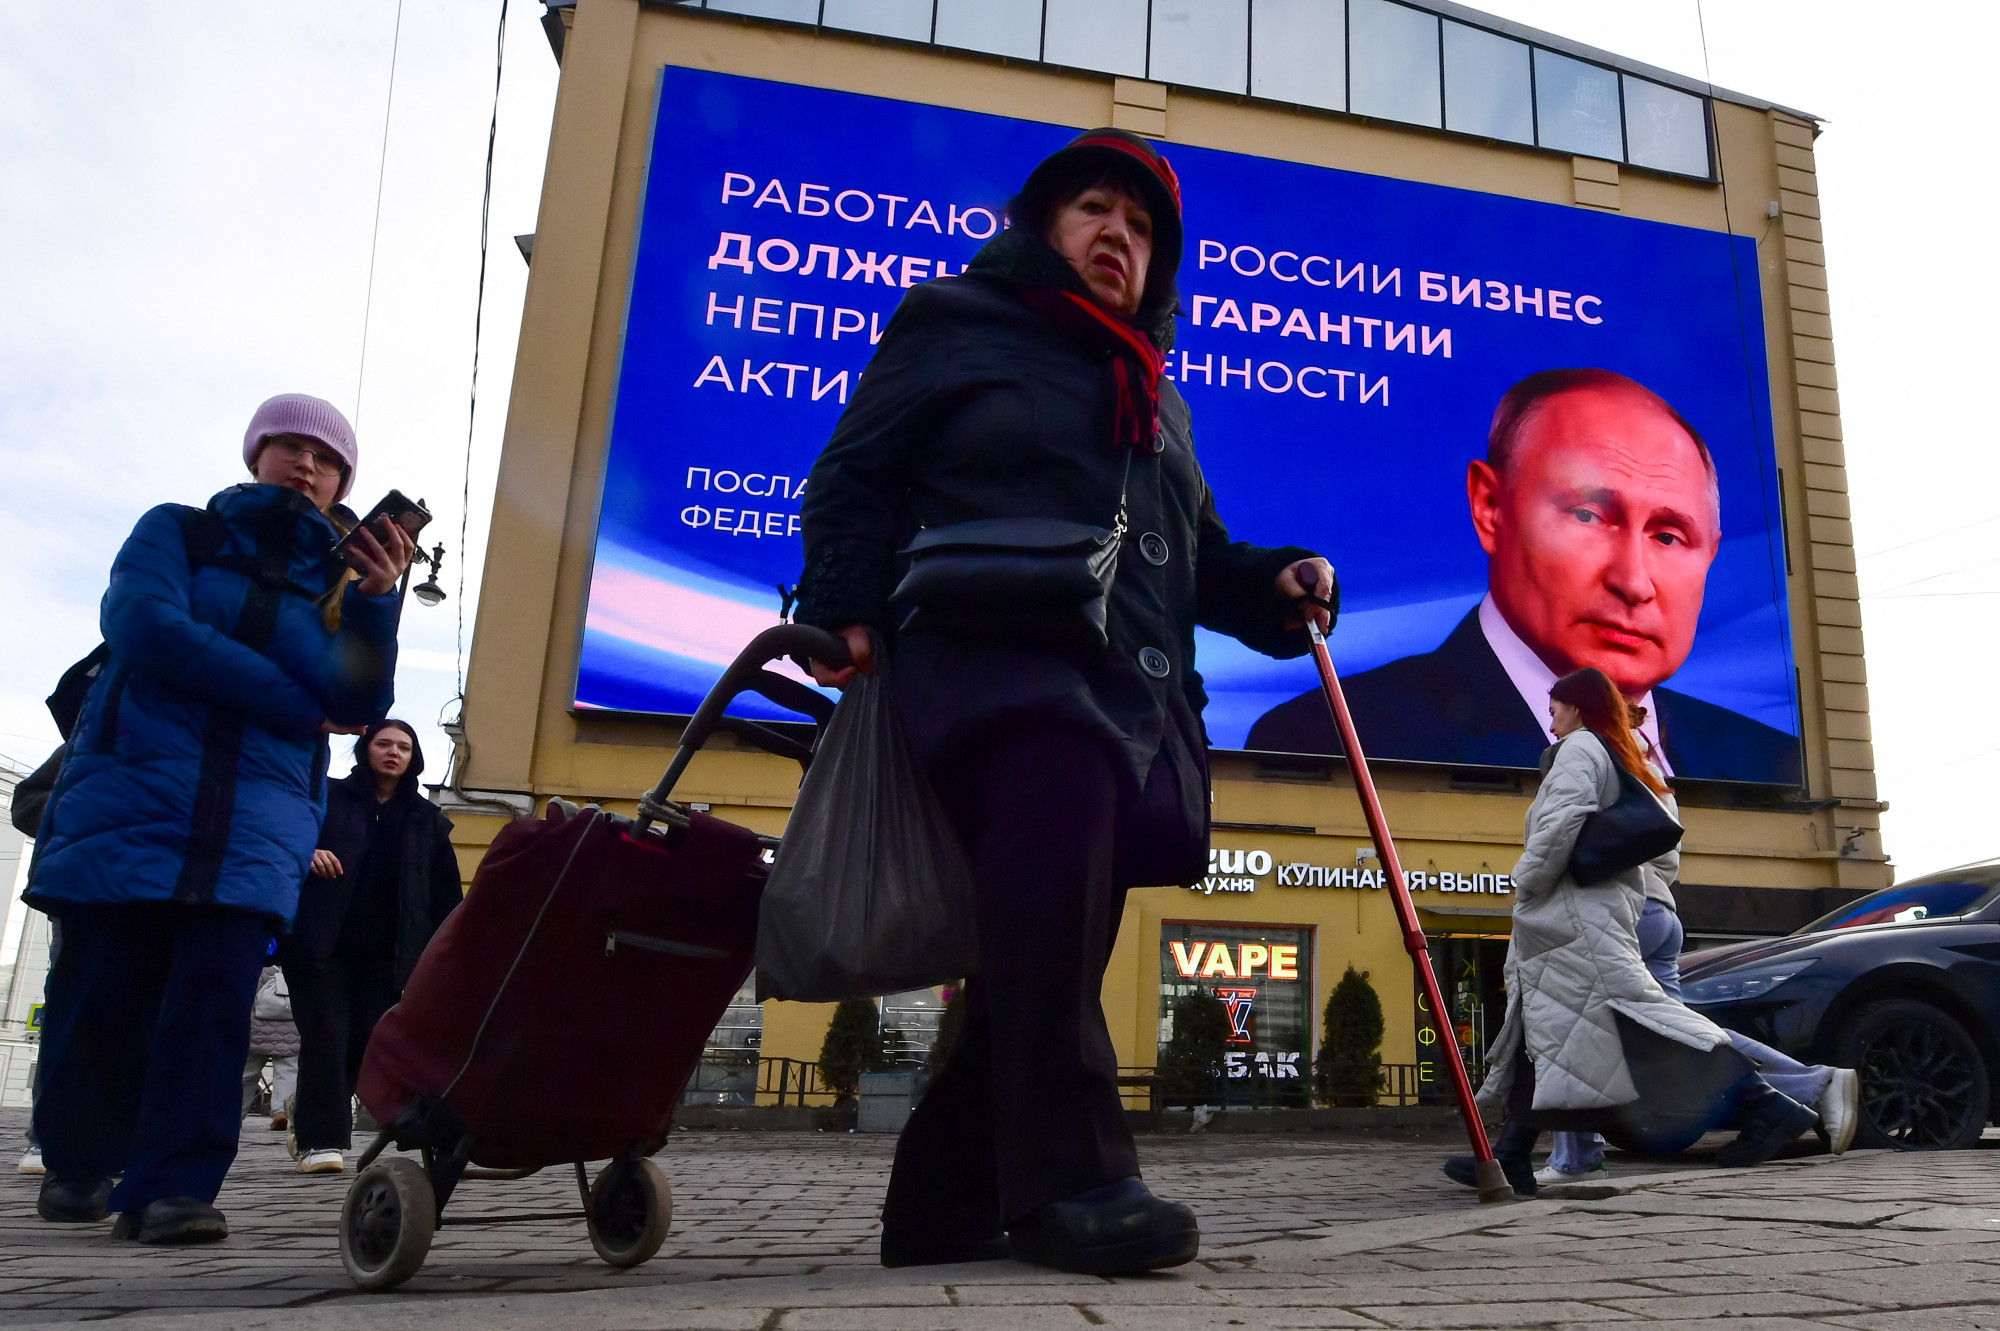 Így néz ki Putyinék elnökválasztási forgatókönyve, amit ellenzéki akciókkal és ukrán drónokkal próbálnak megzavarni